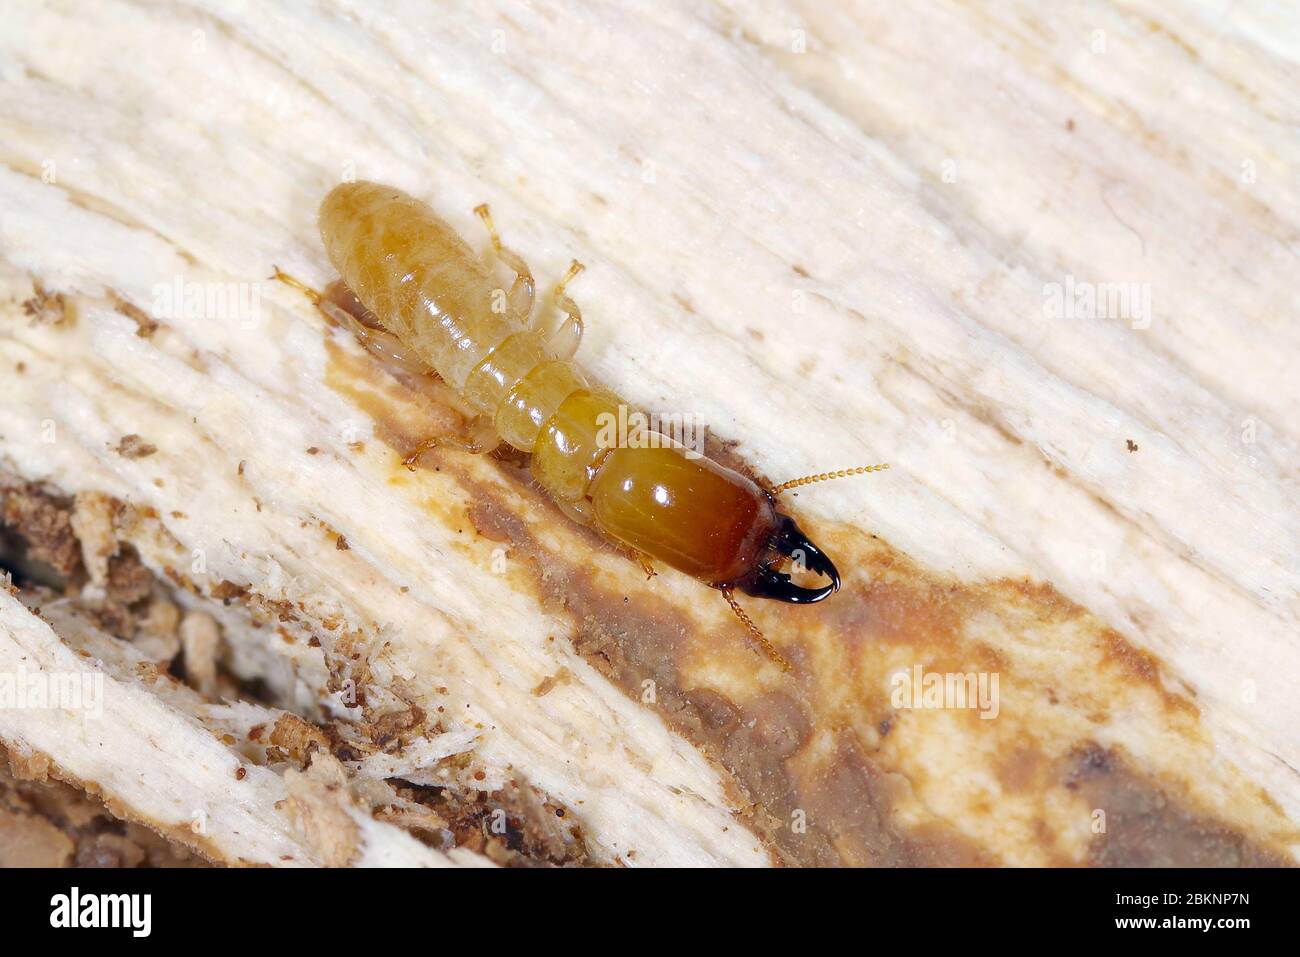 Soldado de la termita de madera seca de color amarillo (Kalotmes flavicollis), una plaga grave en los países mediterráneos Foto de stock